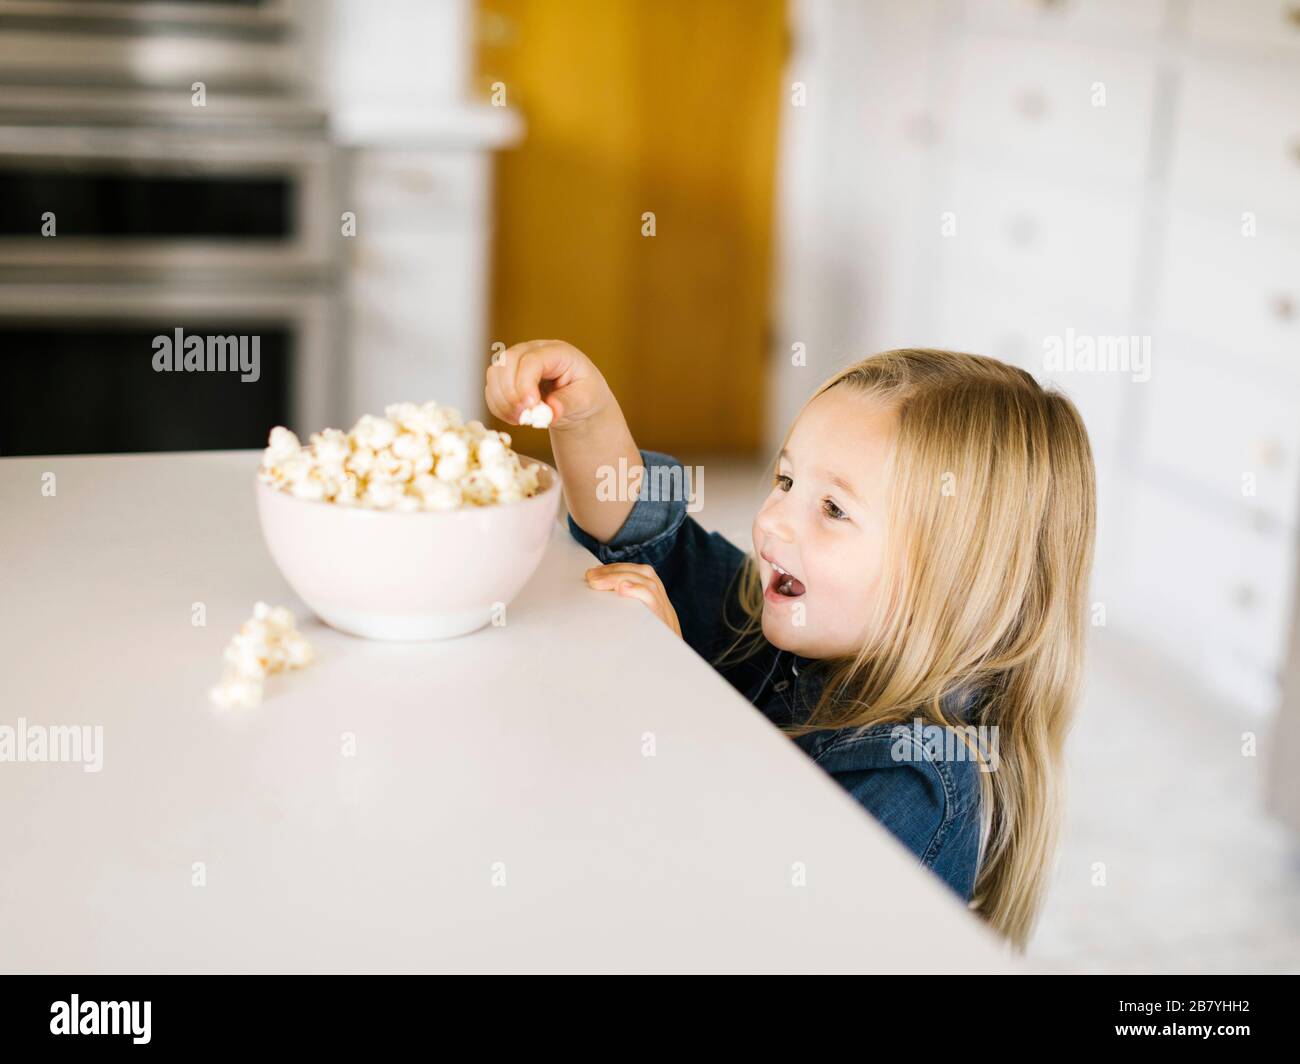 Ragazza che prende il popcorn dalla ciotola sul banco della cucina Foto Stock